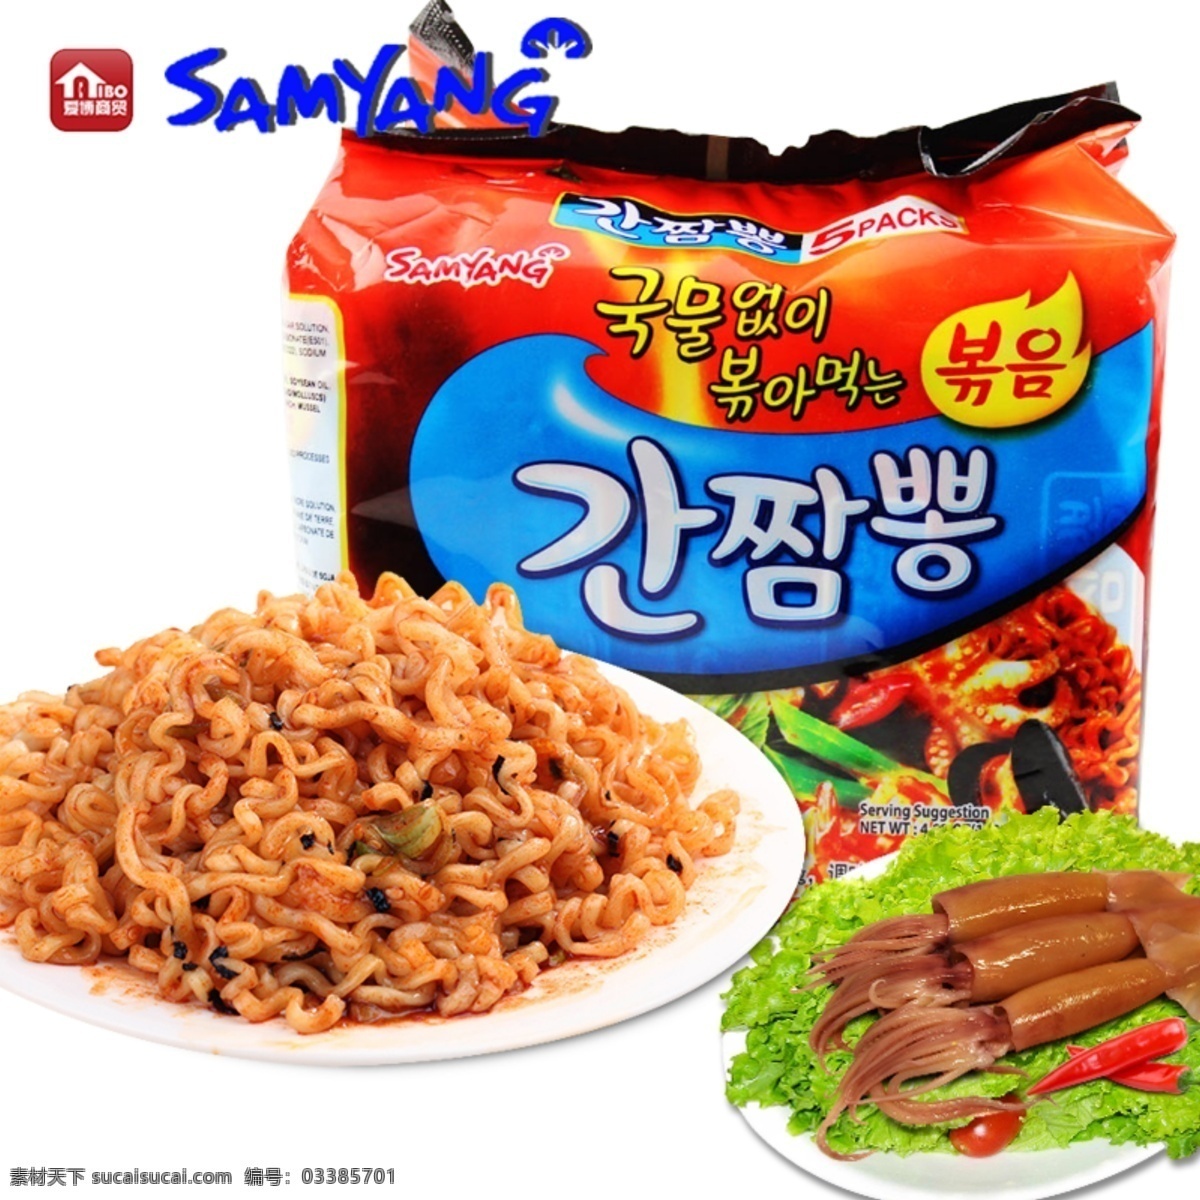 韩国 方便面 三养 干 拌 海鲜 干拌海鲜面 速食面 面条 食品 生活百科 餐饮美食